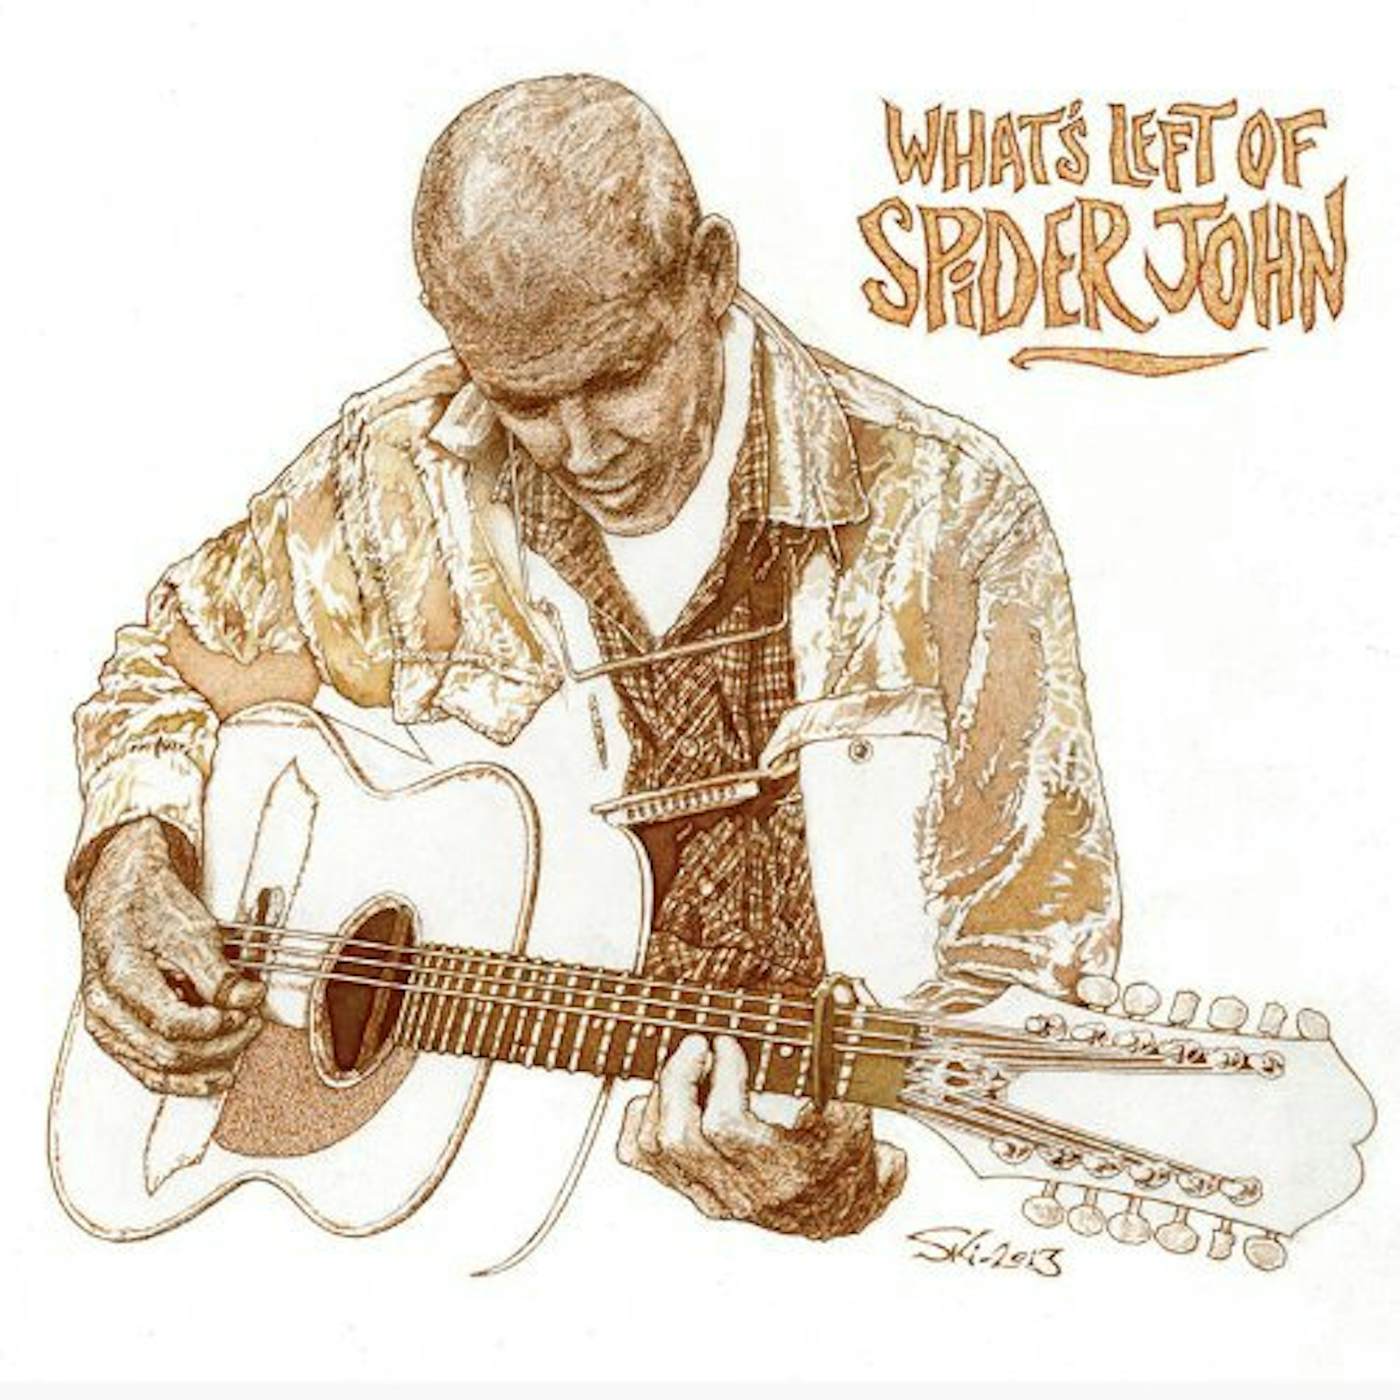 Spider John Koerner WHAT'S LEFT OF SPIDER JOHN CD